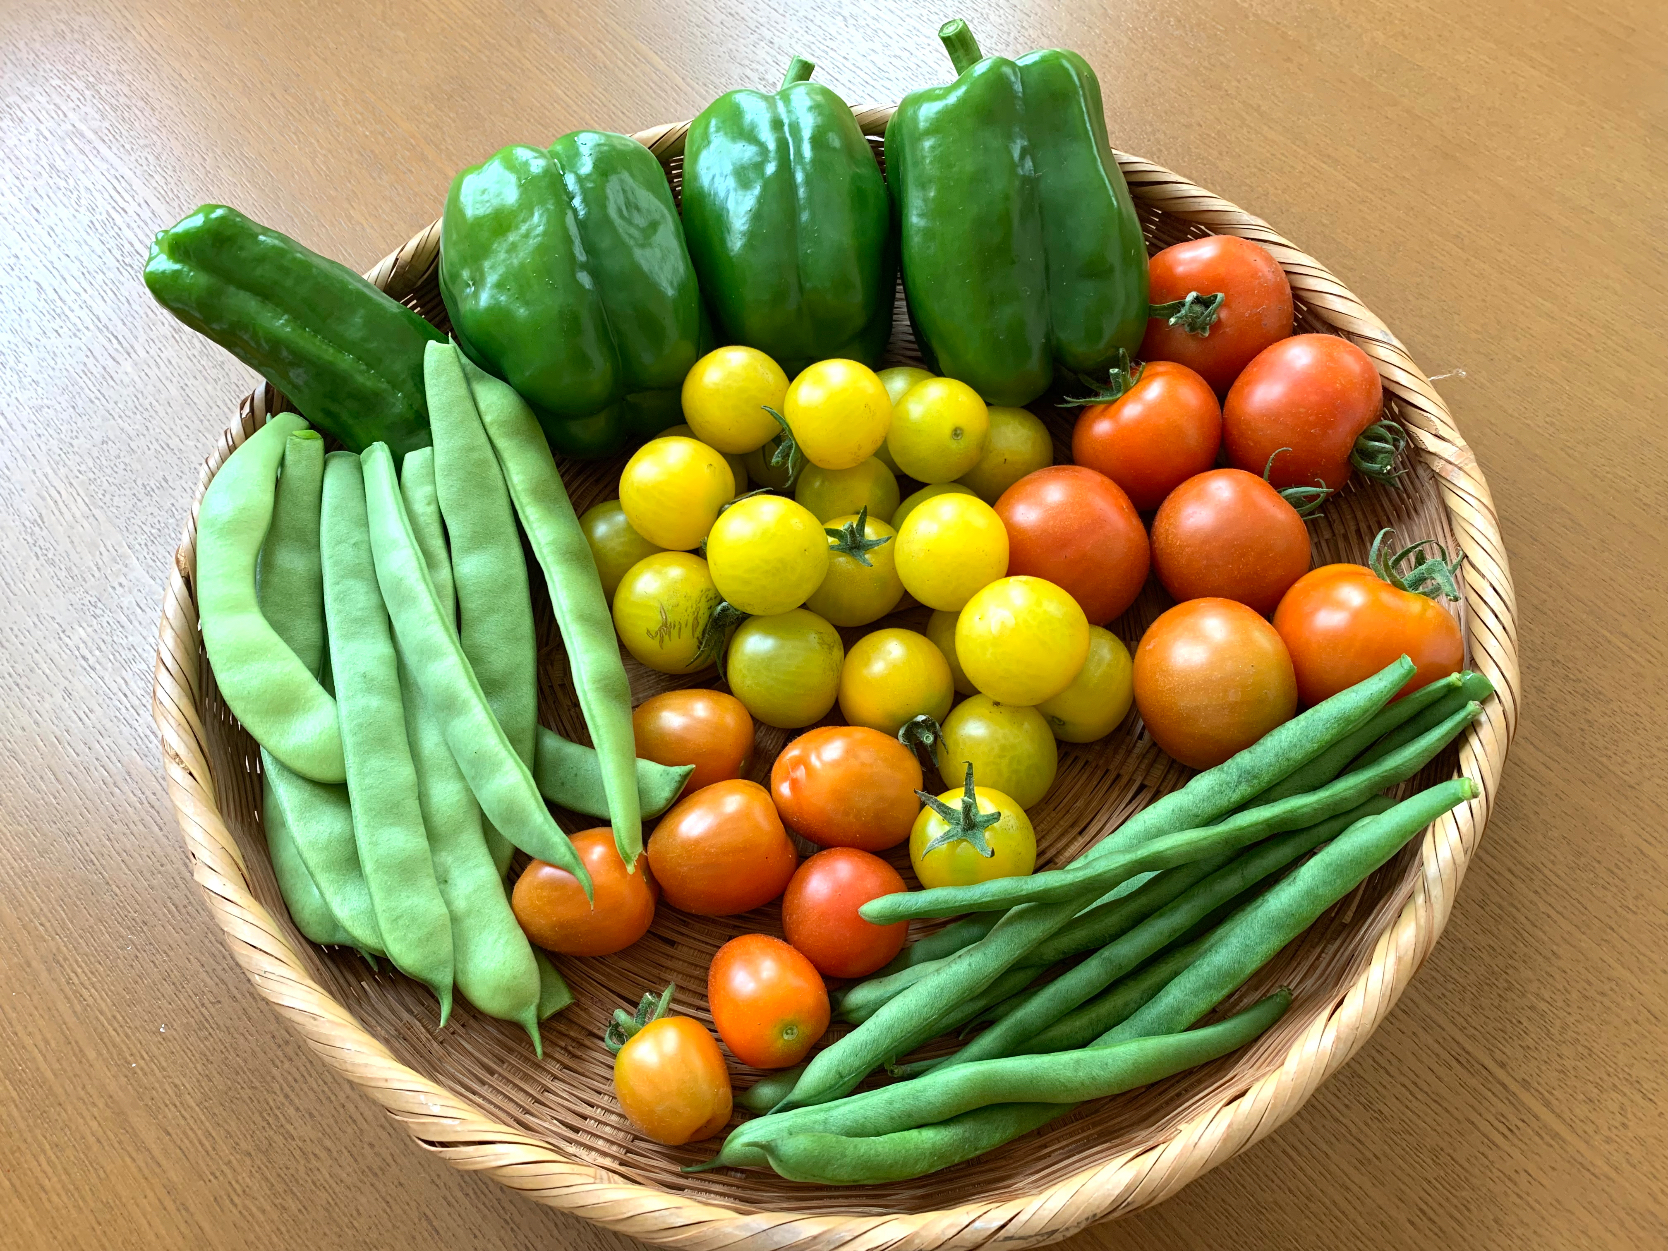 夏は、庭で採れたての野菜を使ってメニューを考えます🎵